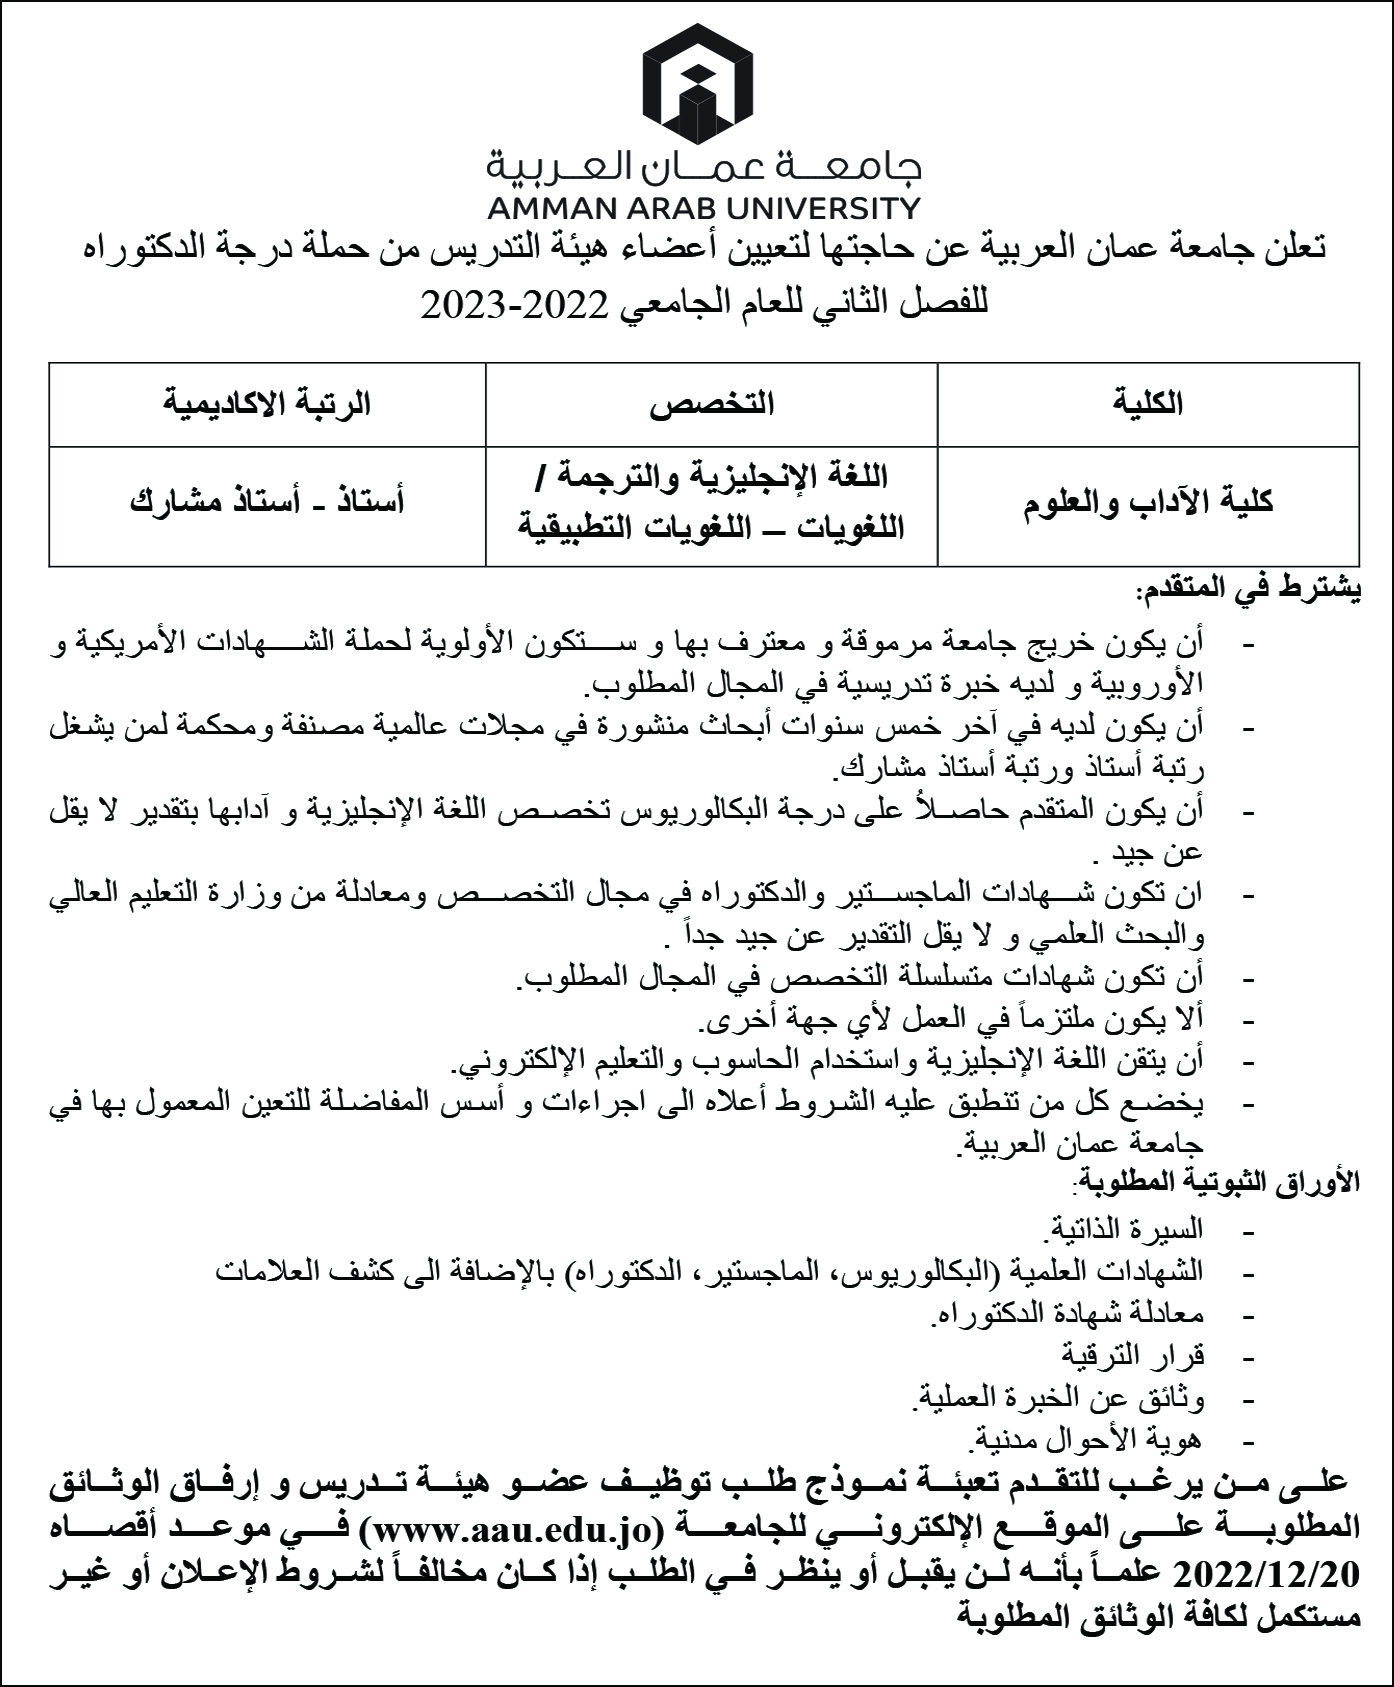 جامعة عمان العربية تعلن عن حاجتها لتعيين أعضاء هيئة تدريسية